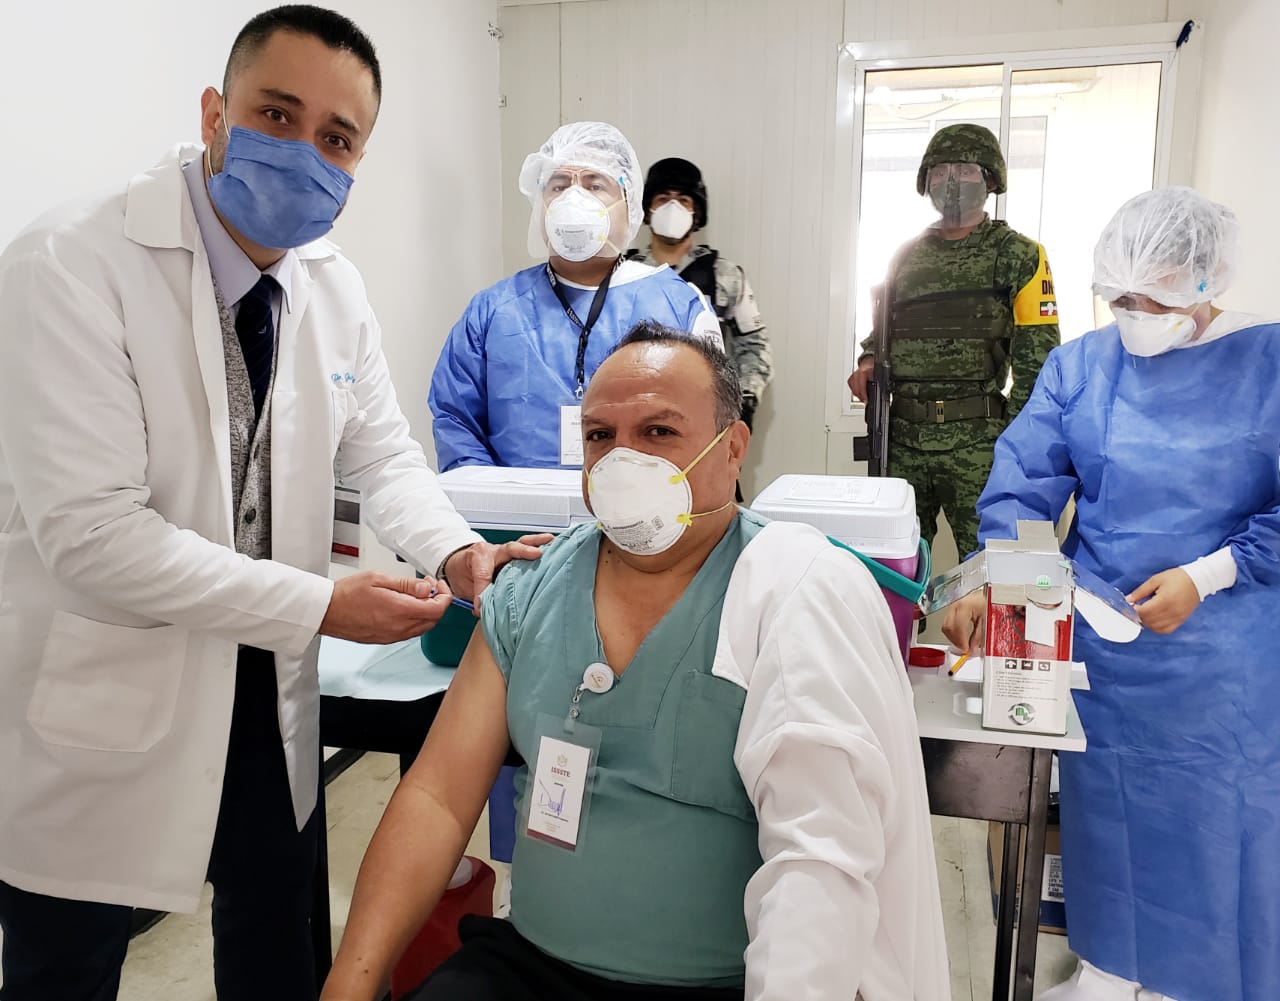 Primer médico vacunado contra COVID-19 en Clínica del ISSSTE de Xalapa